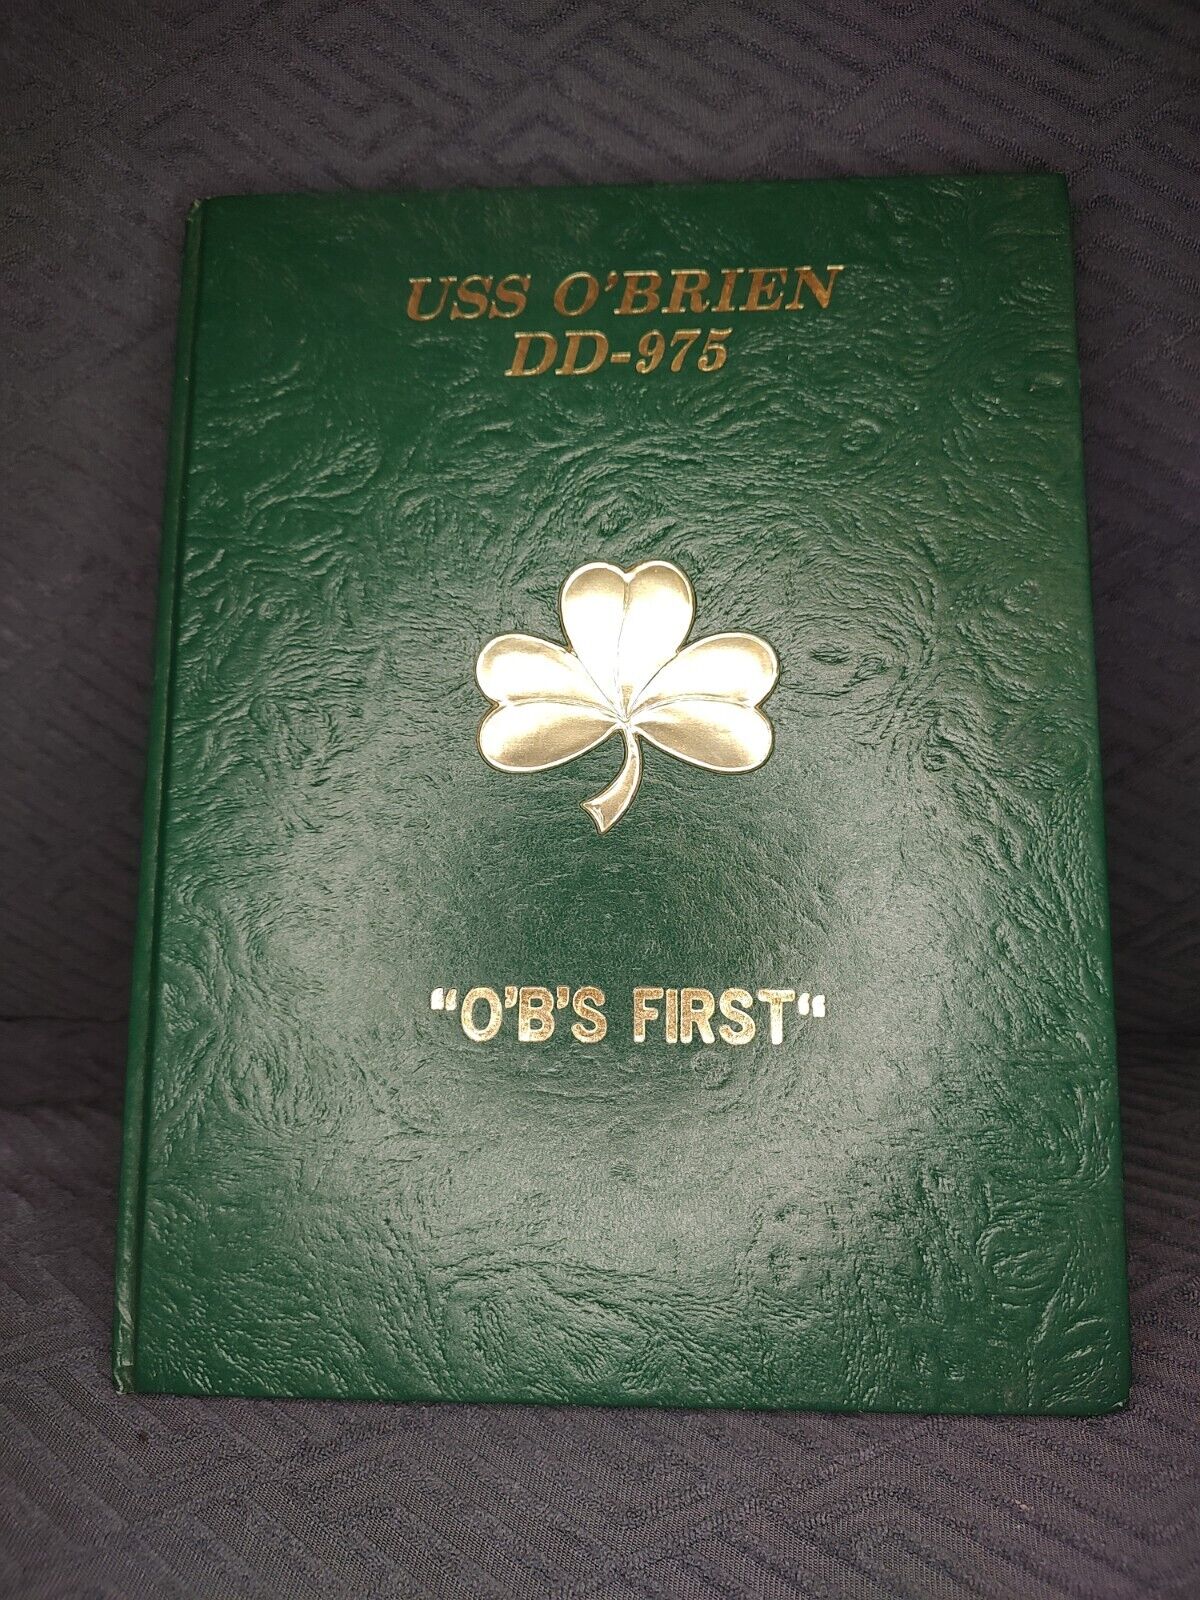 USS O`BRIEN DD-975 1980 MAIDEN WESTPAC DEPLOYMENT CRUISE BOOK